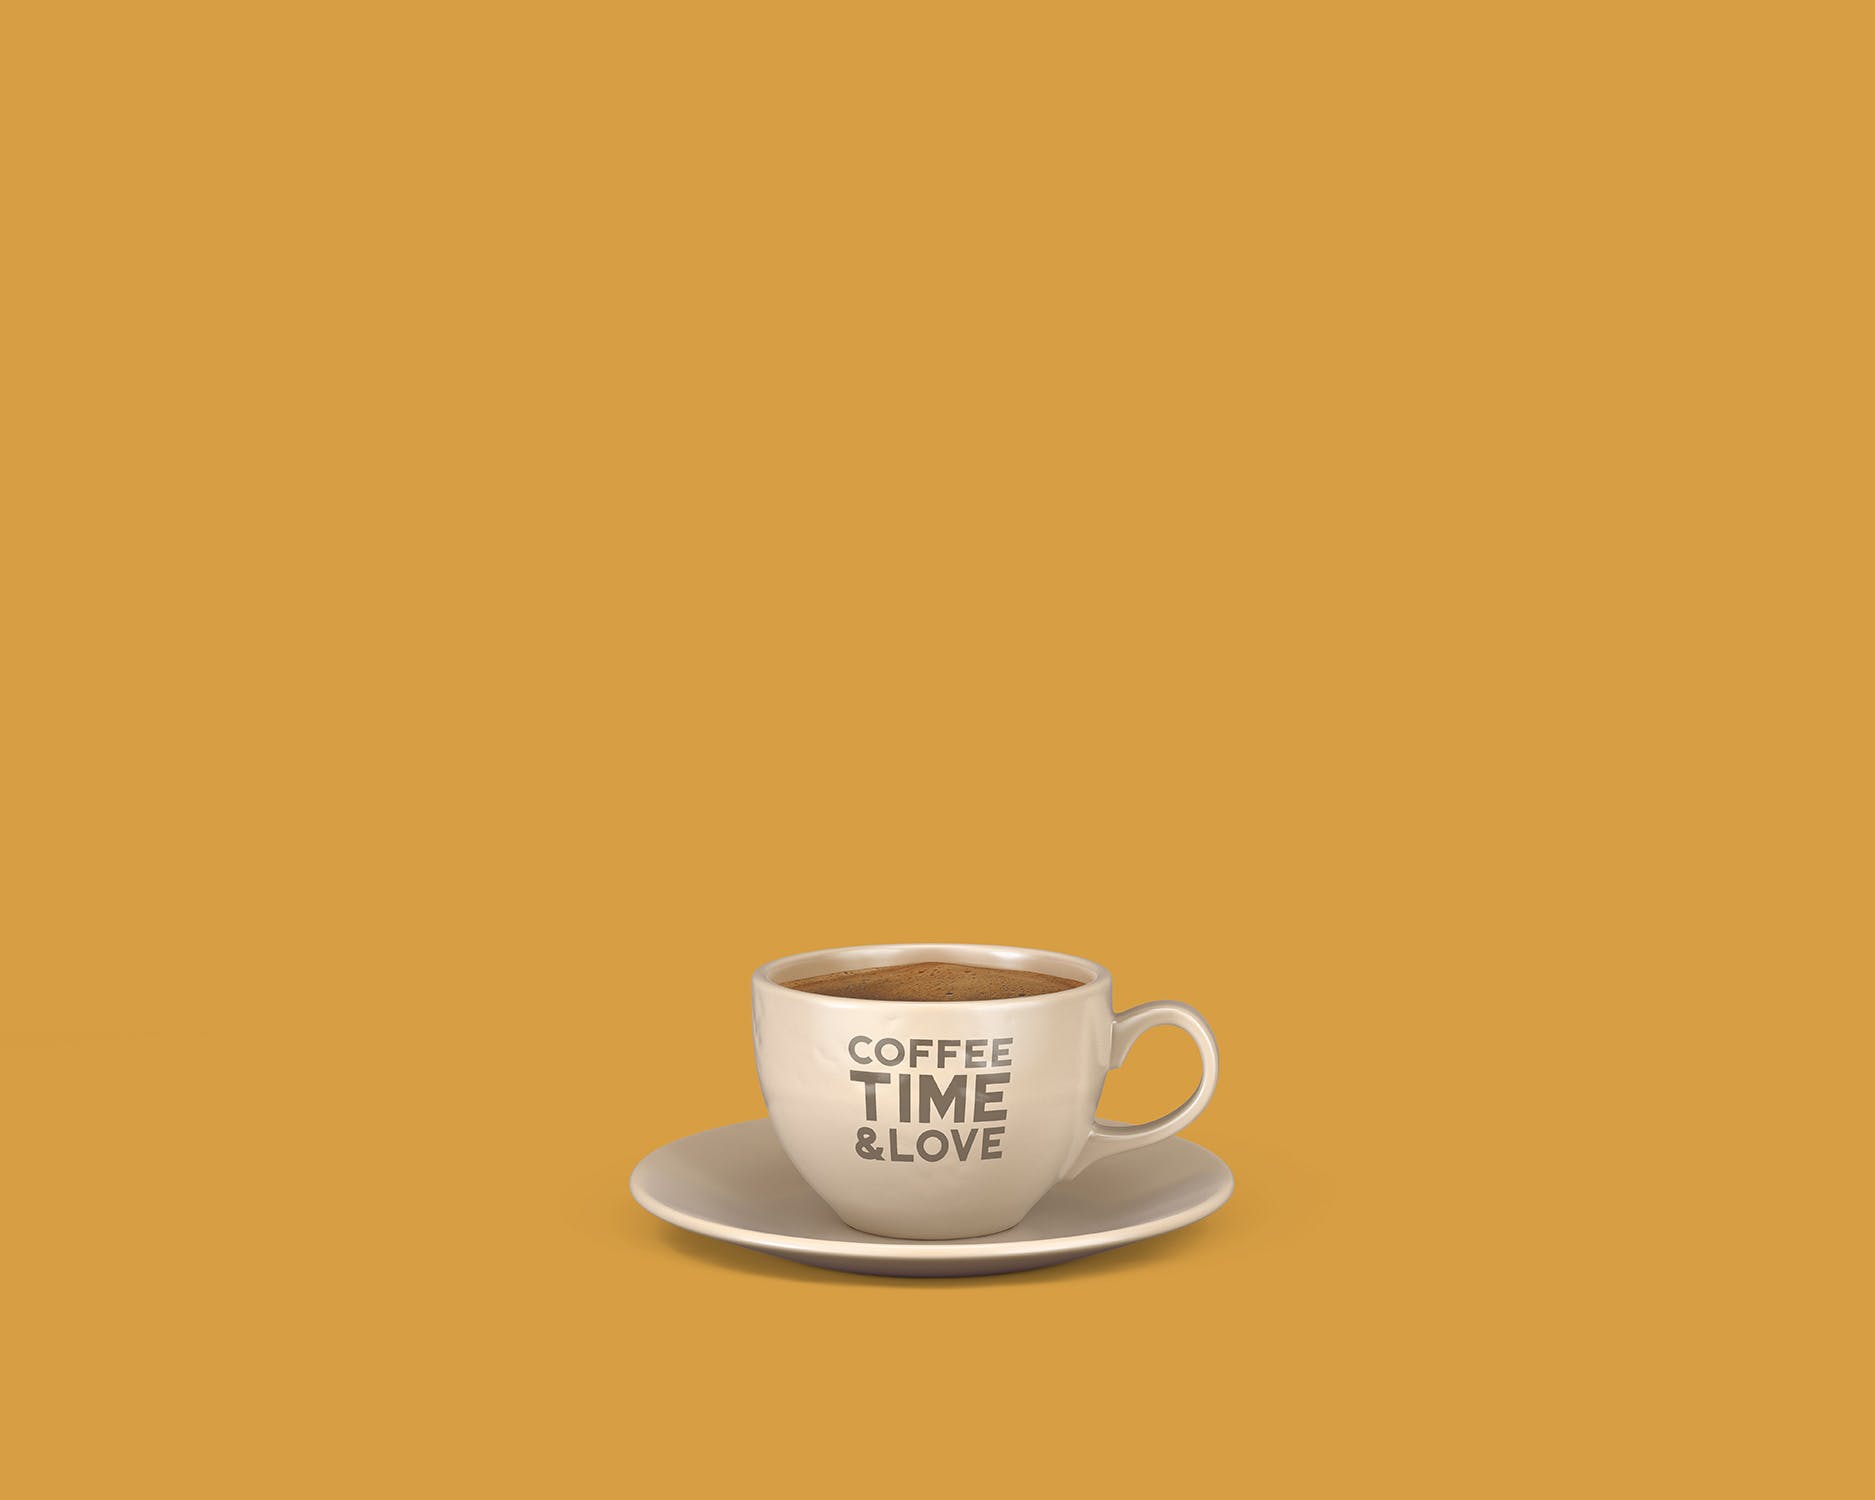 8个咖啡马克杯设计图蚂蚁素材精选 8 Coffee Cup Mockups插图(6)